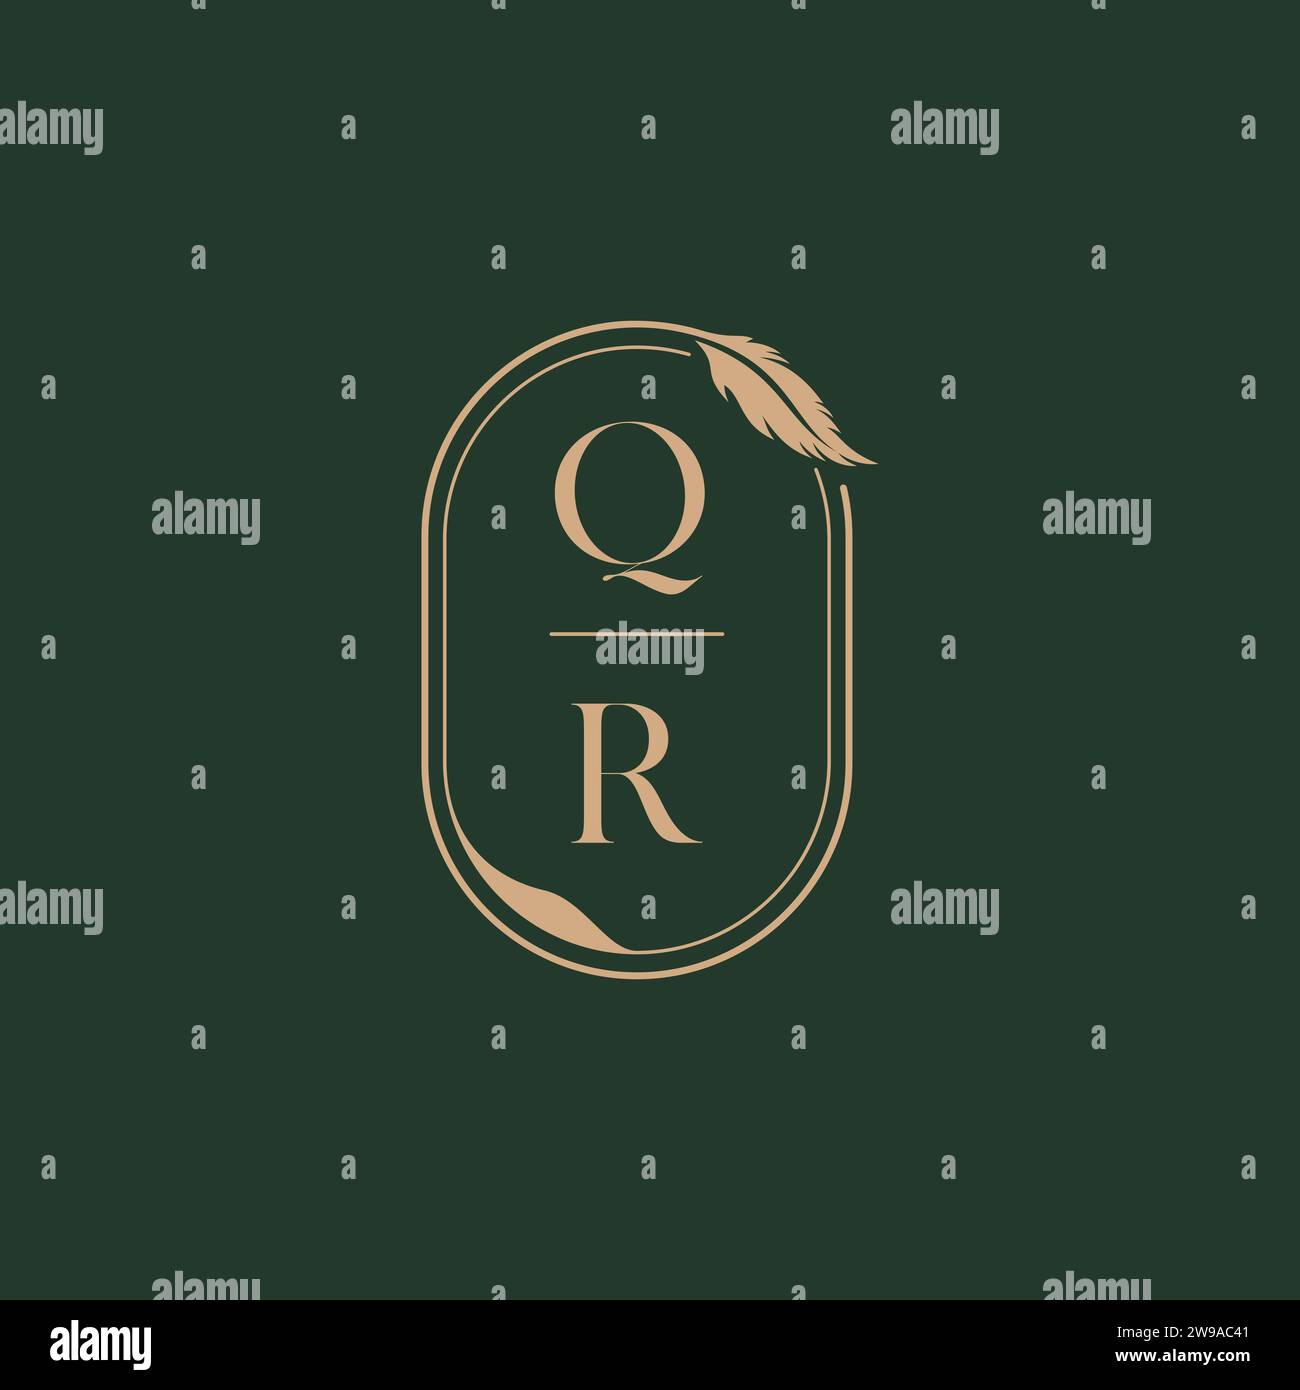 QR feather concept wedding monogram logo design ideas as inspiration Stock Vector